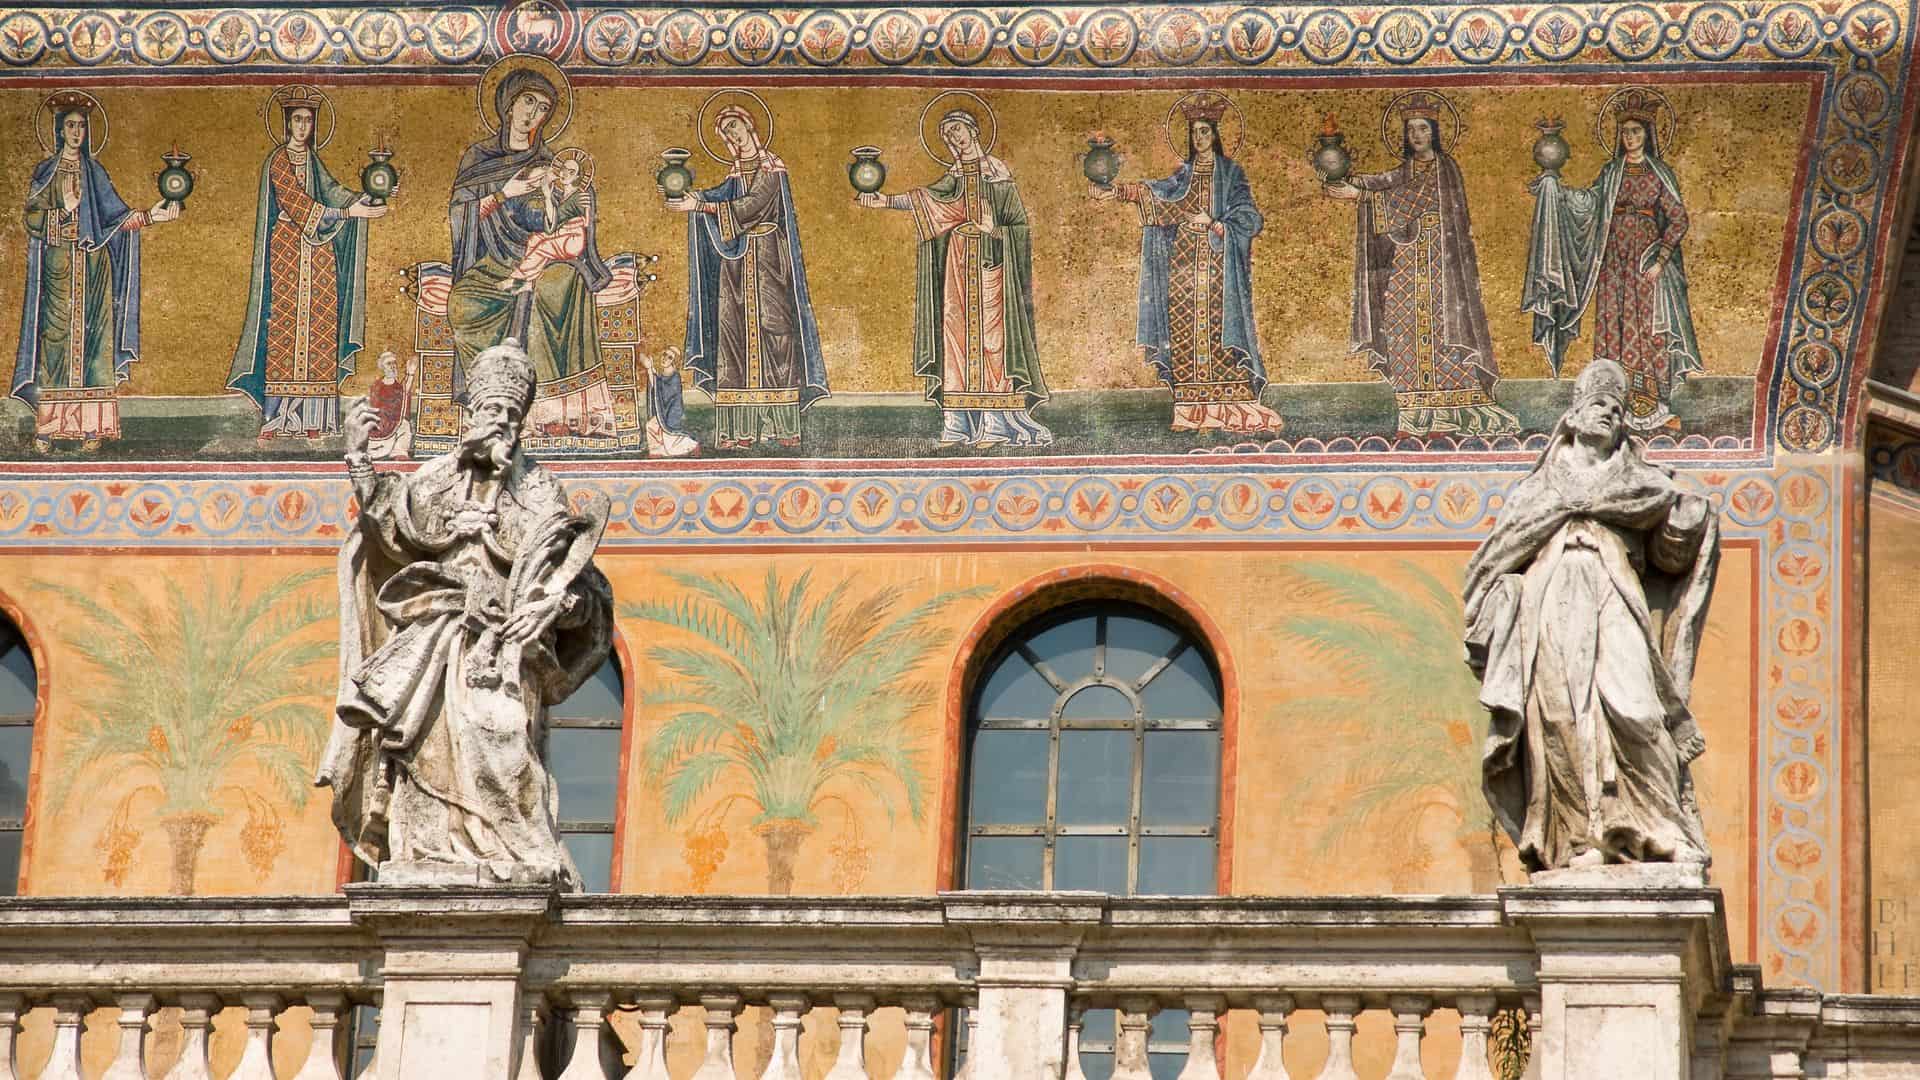 The golden mosaic facade of Santa Maria in Trastevere.